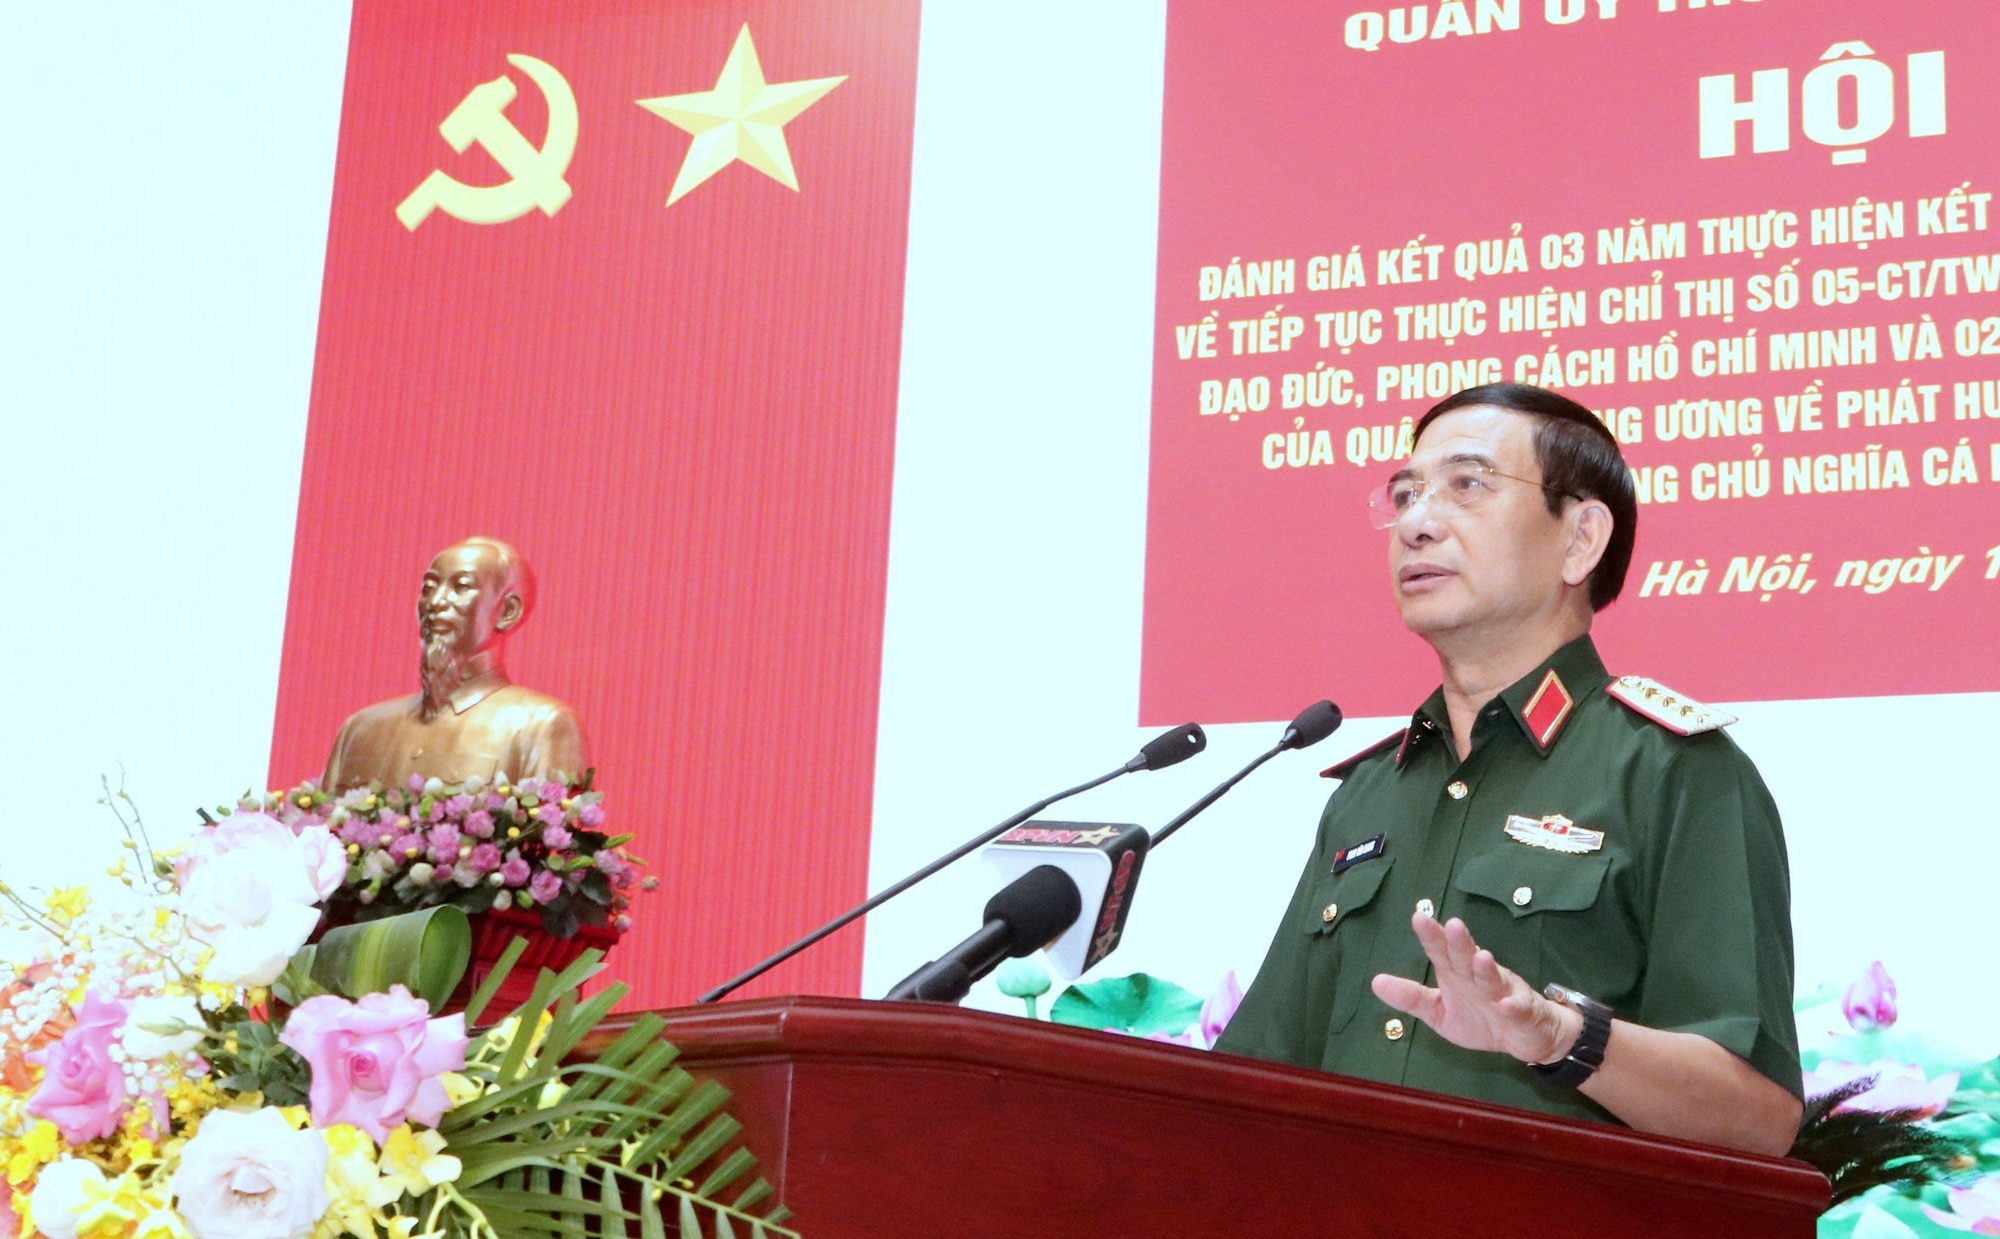 Đại tướng Phan Văn Giang - bộ trưởng Bộ Quốc phòng - phát biểu tại hội nghị - Ảnh: V.T.